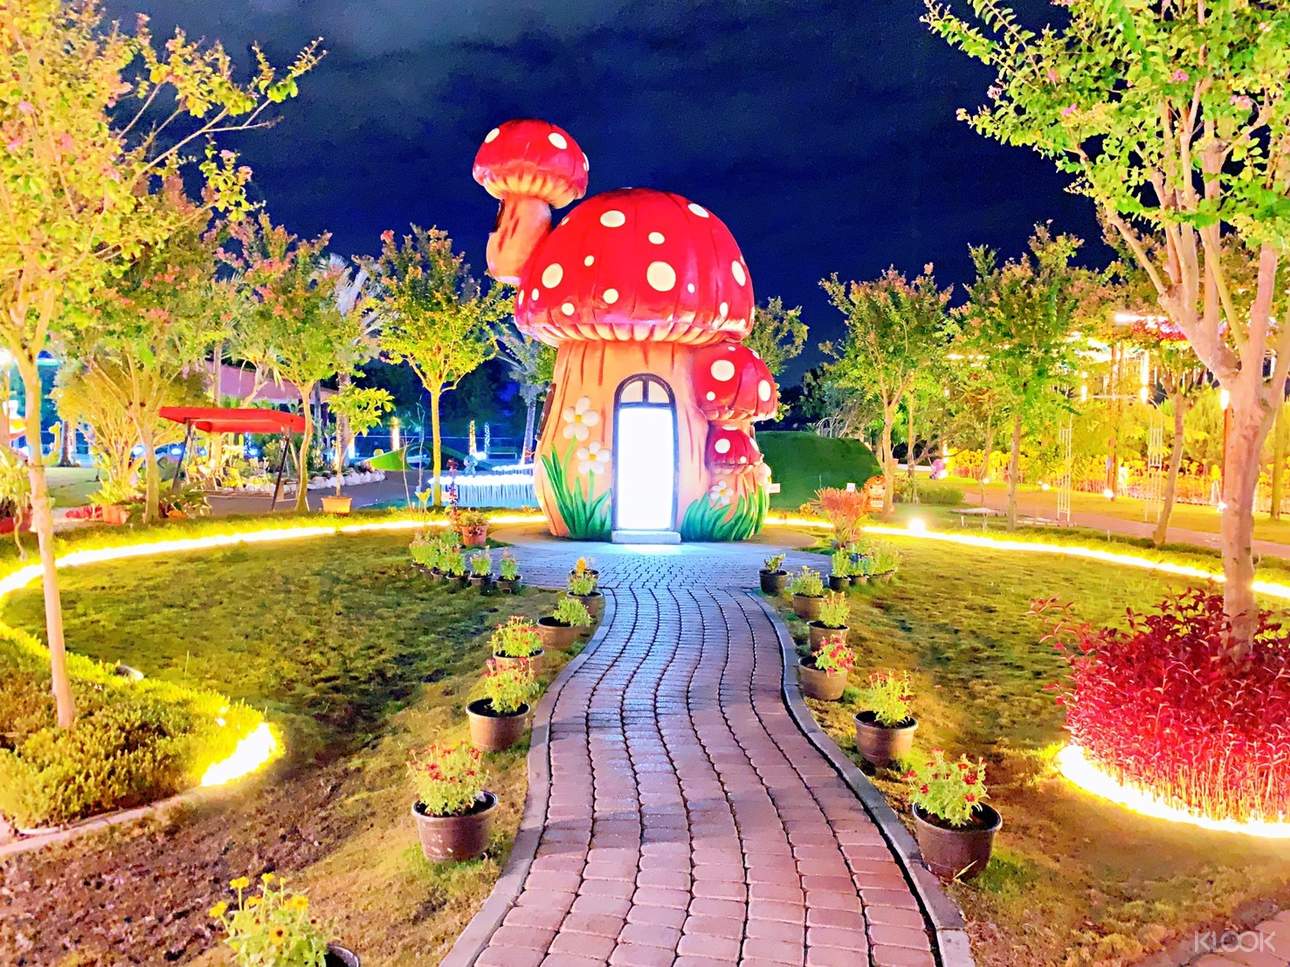 繽紛可愛的童話世界蘑菇屋也是不能錯過的拍照打卡景點唷！